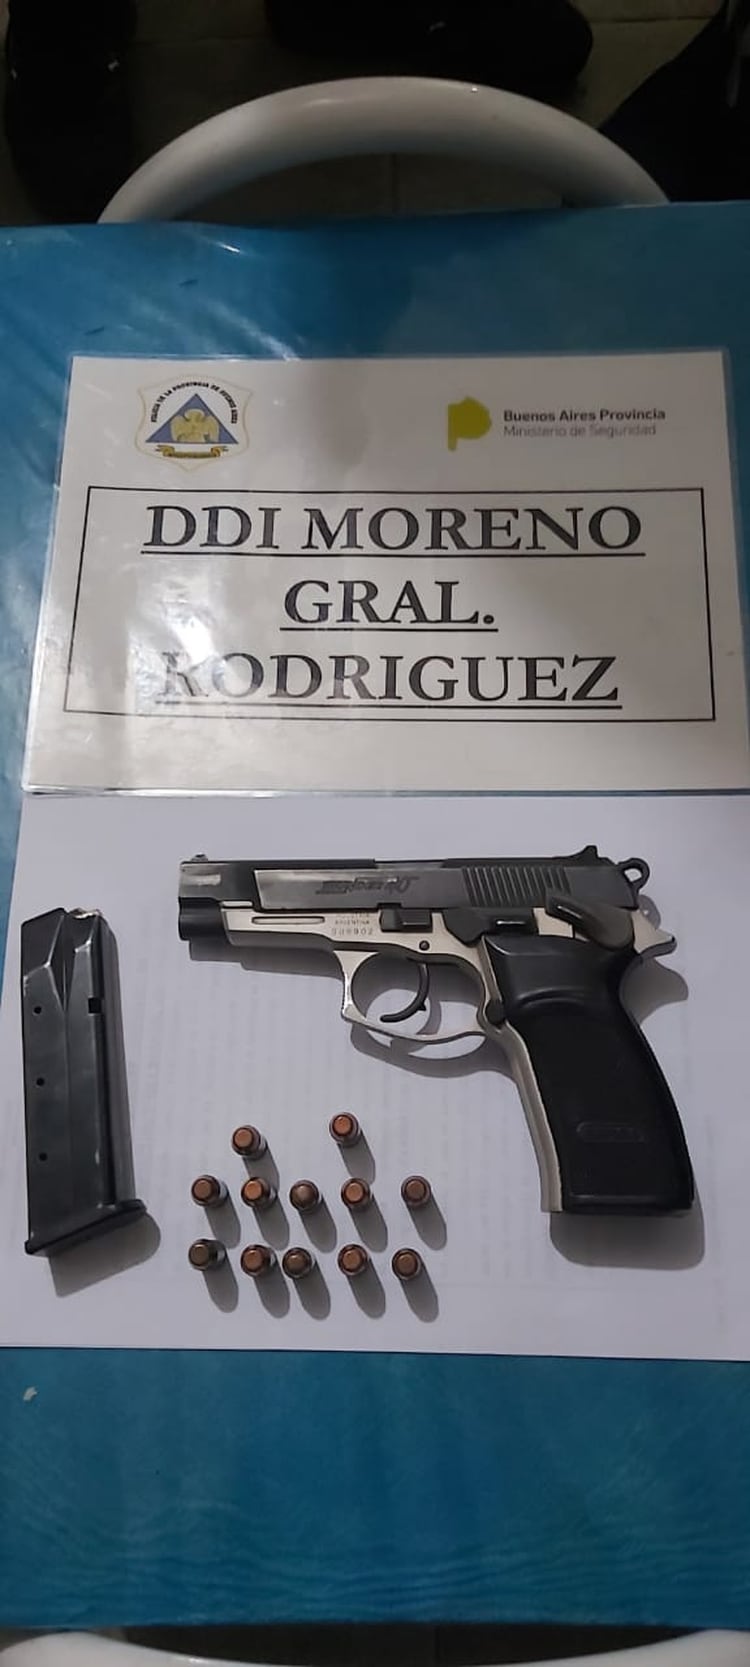 La pistola marca Bersa calibre .40 que había en la casa de Paredes con una remera negra con la inscripción “Policía” y un handy